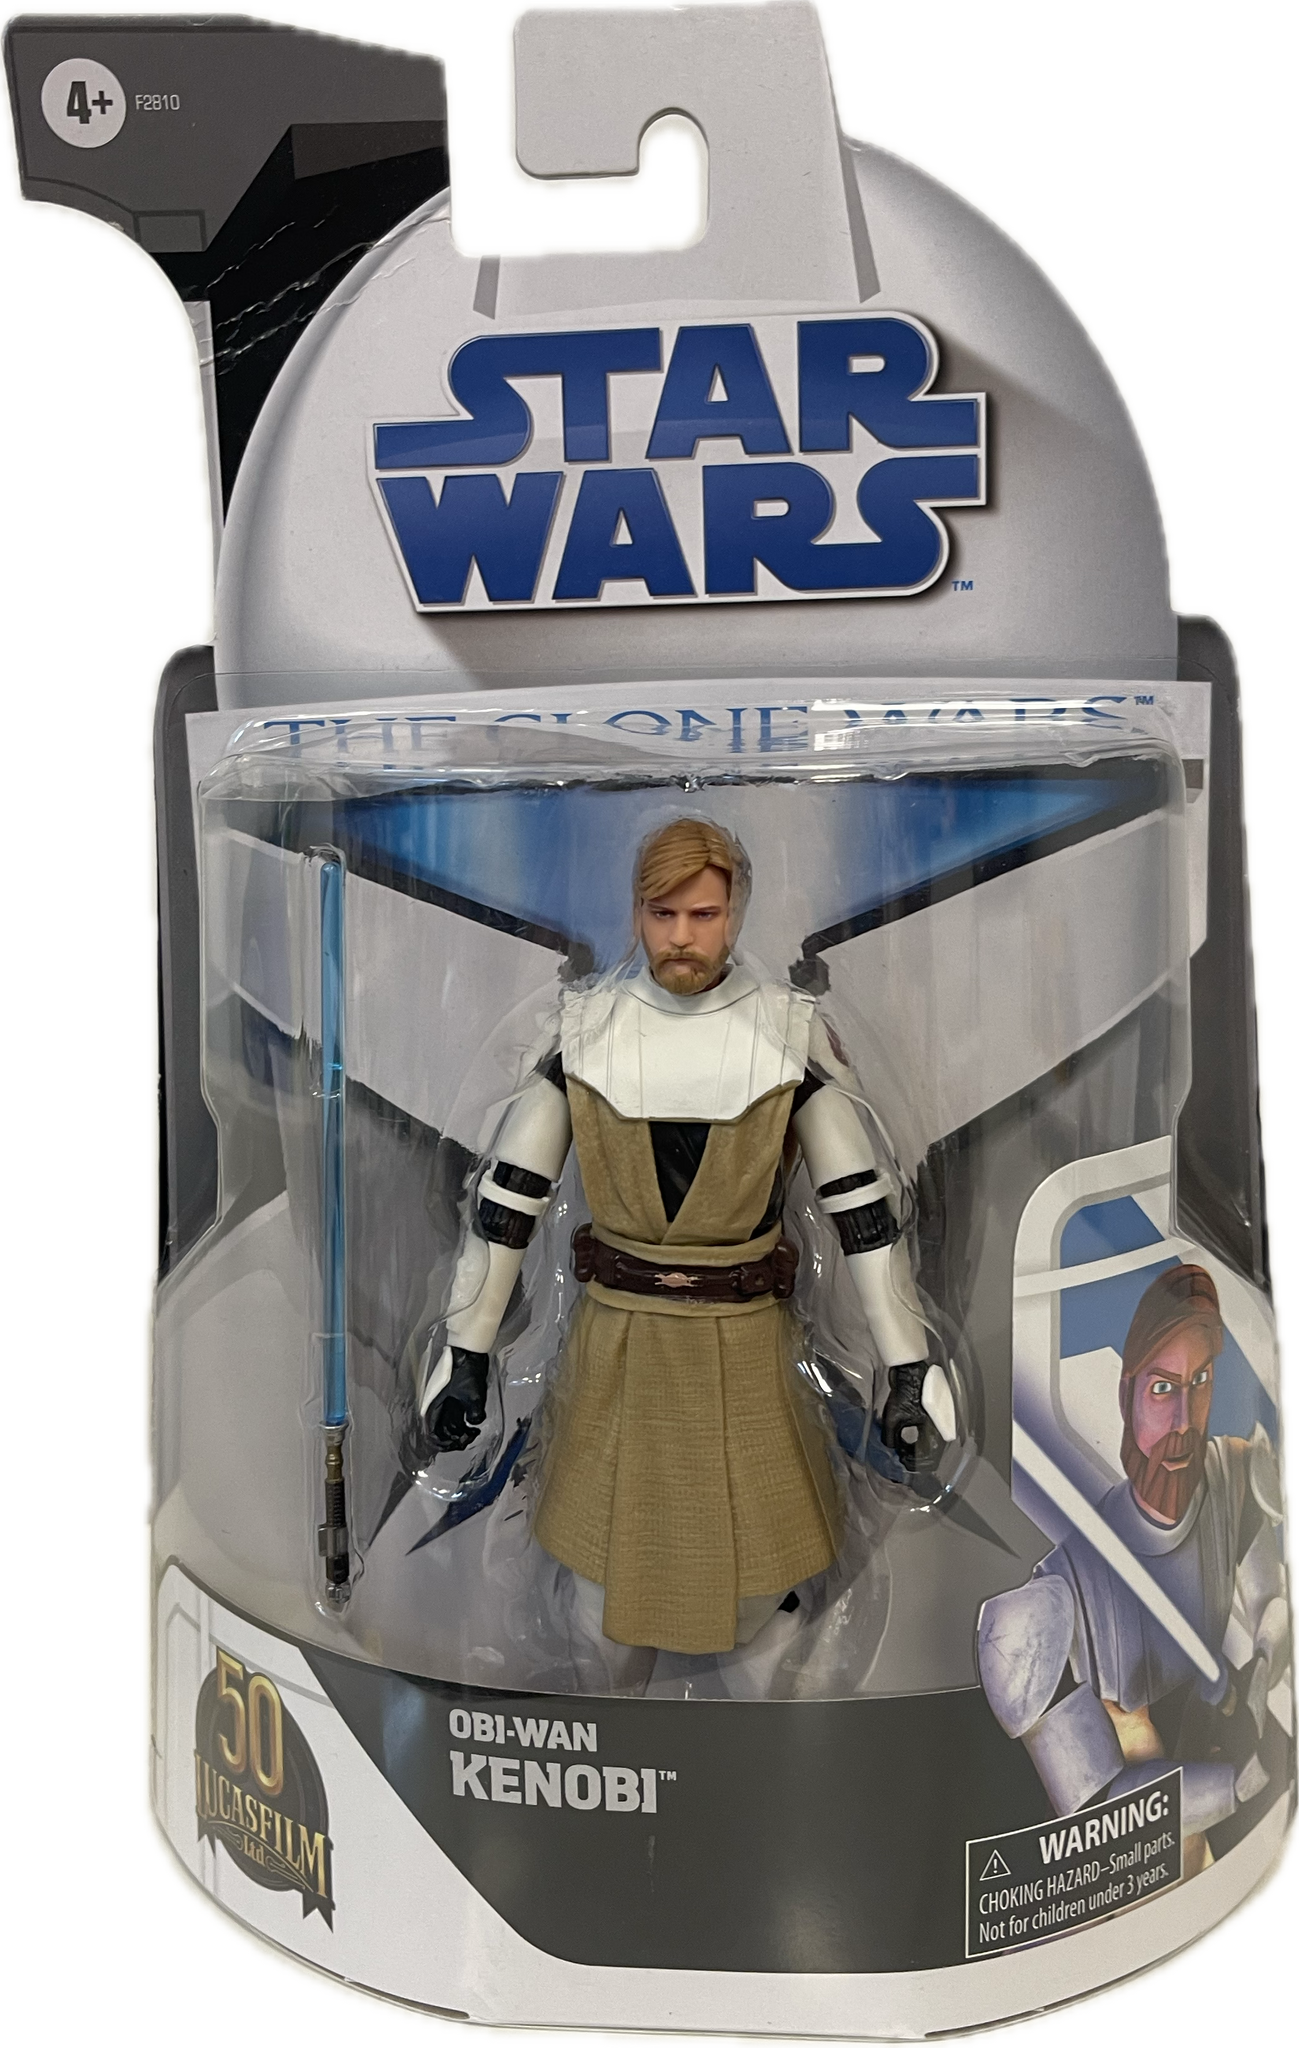 Star Wars 50th Anniversary The Clone Wars Obi-Wan Kenobi